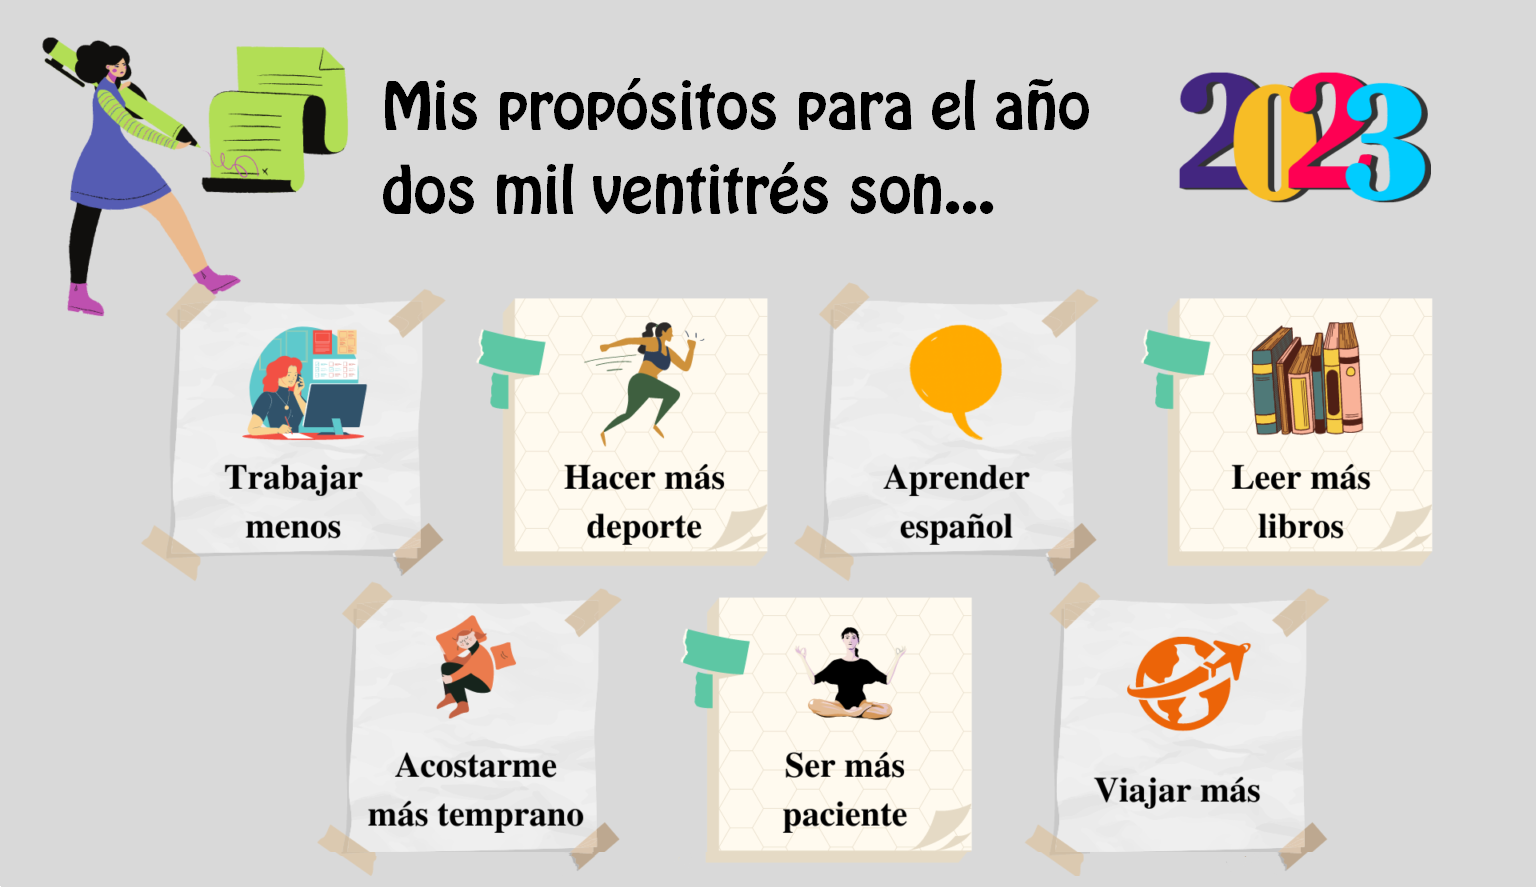 новогодние обещания на испанском языке, propositos